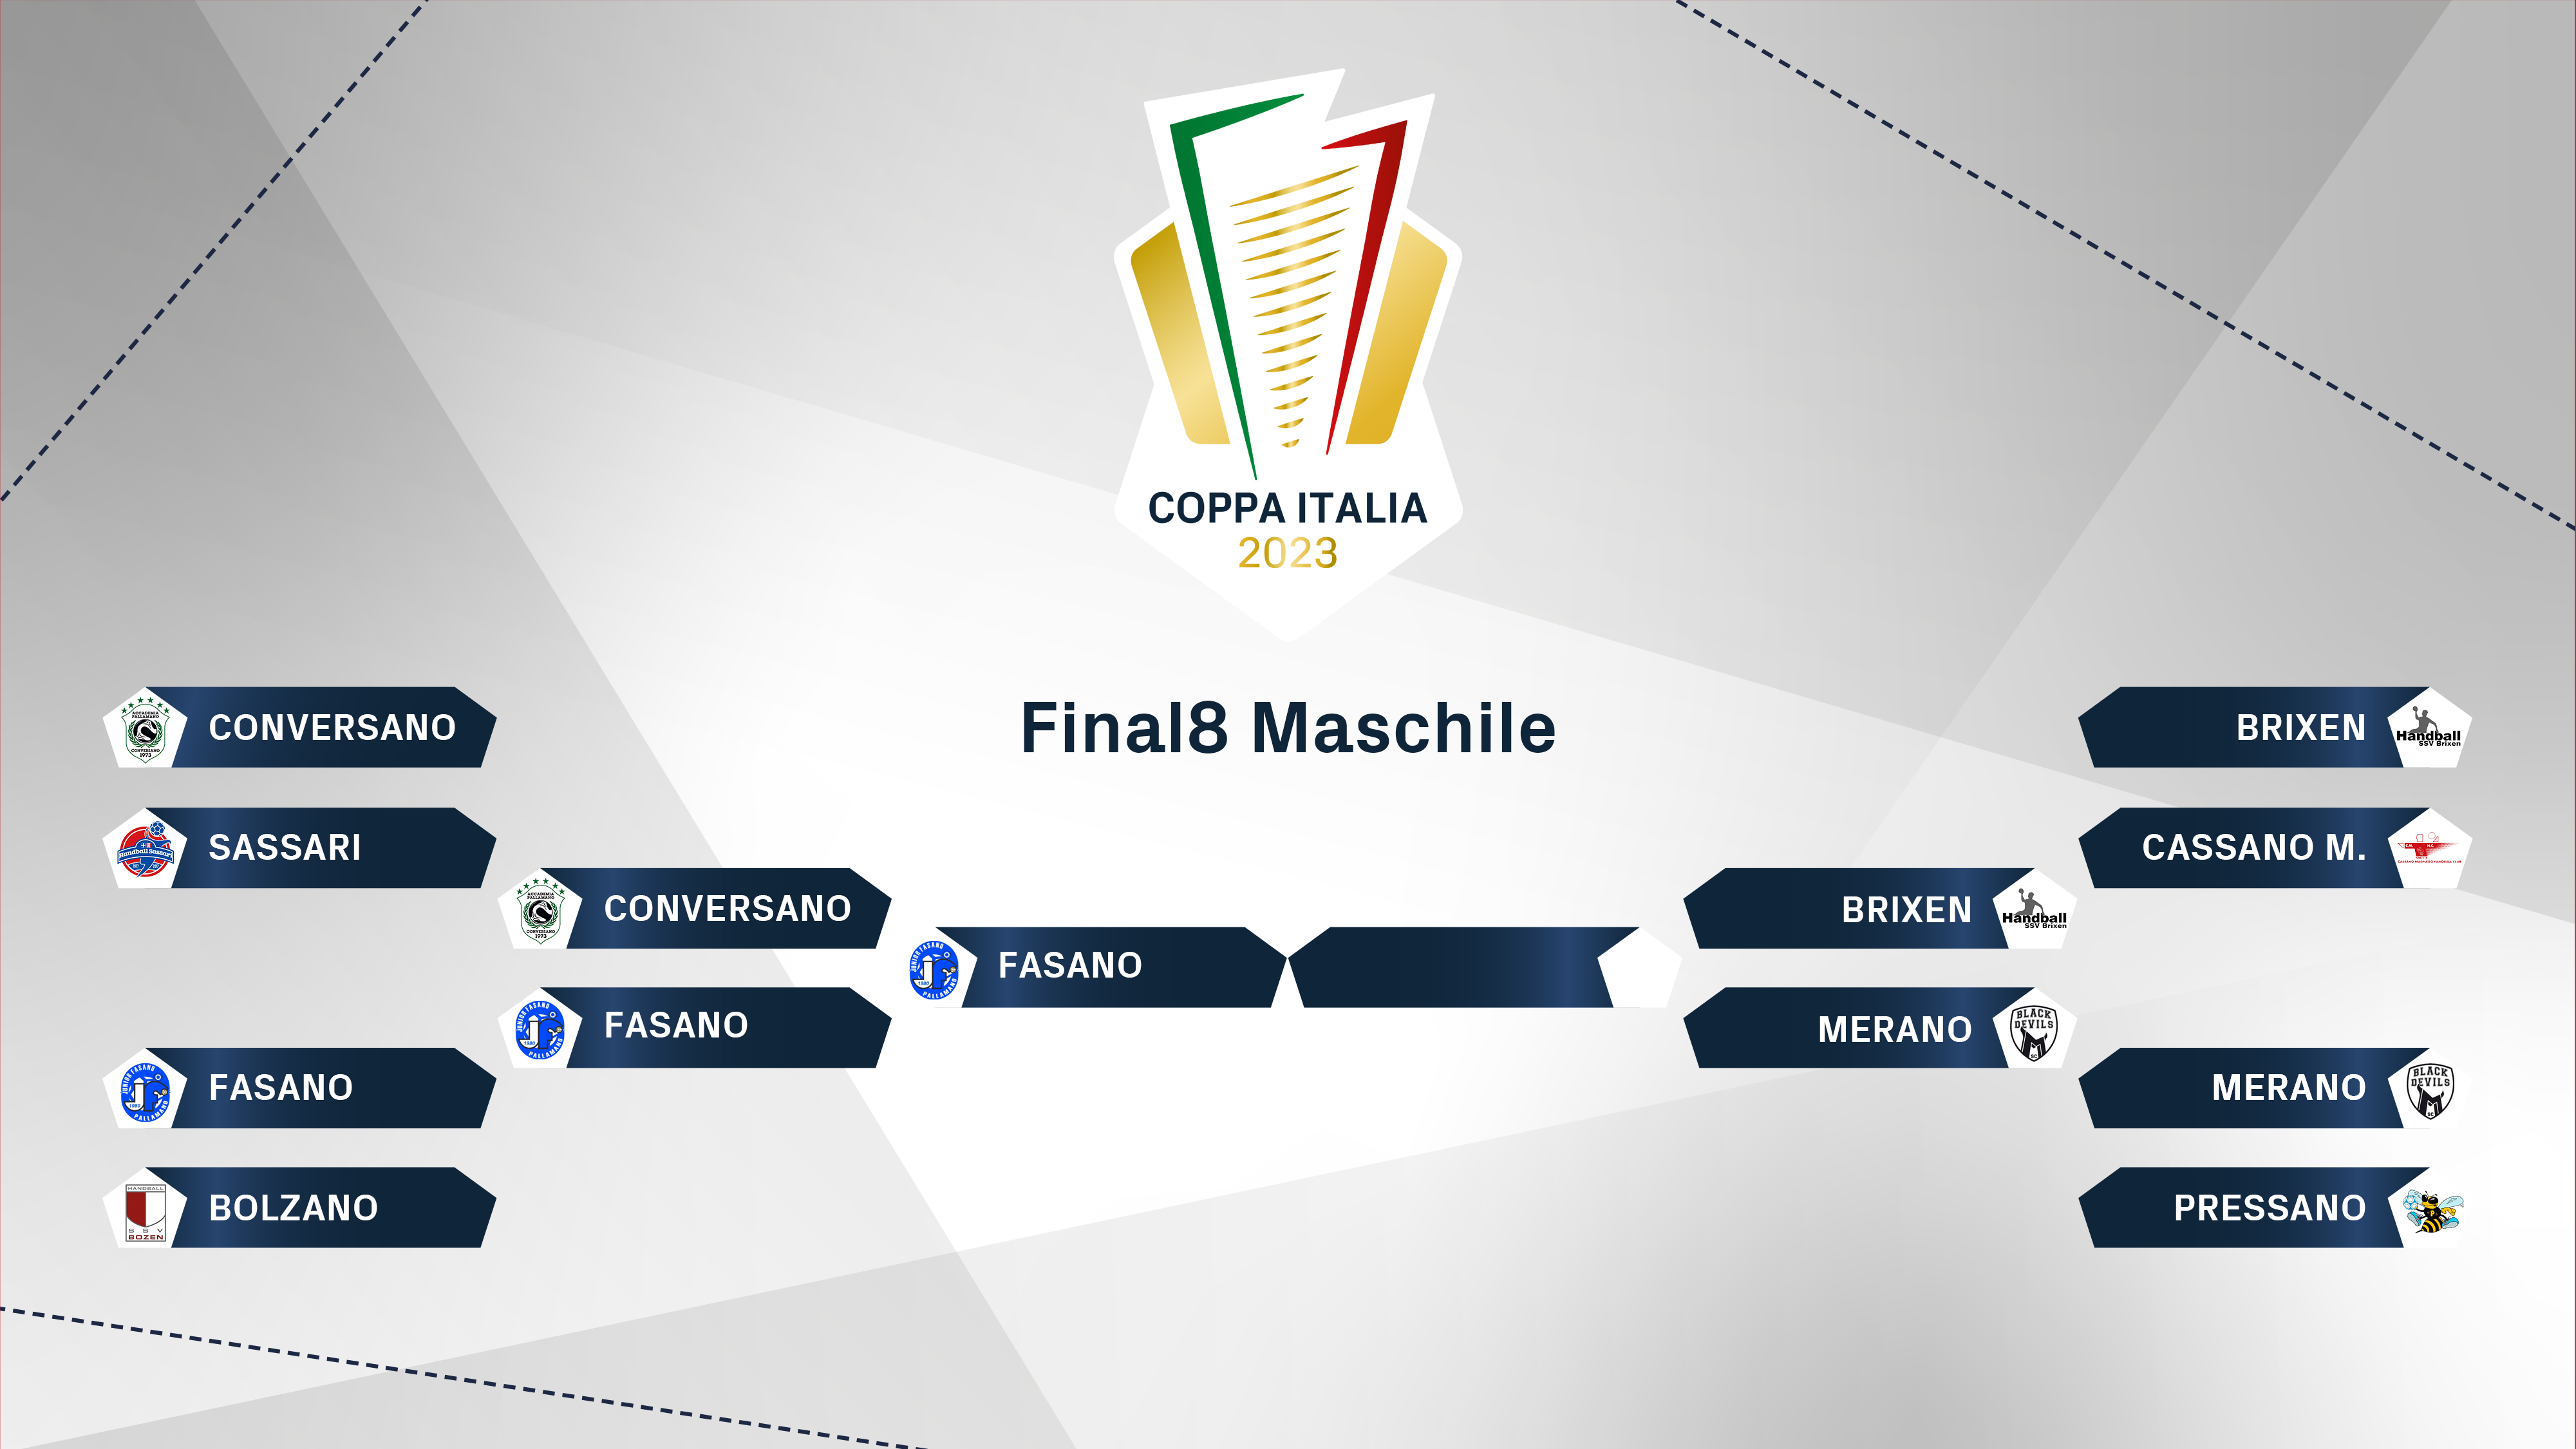 FIGH Coppa Italia 2023 tabellone MFinale